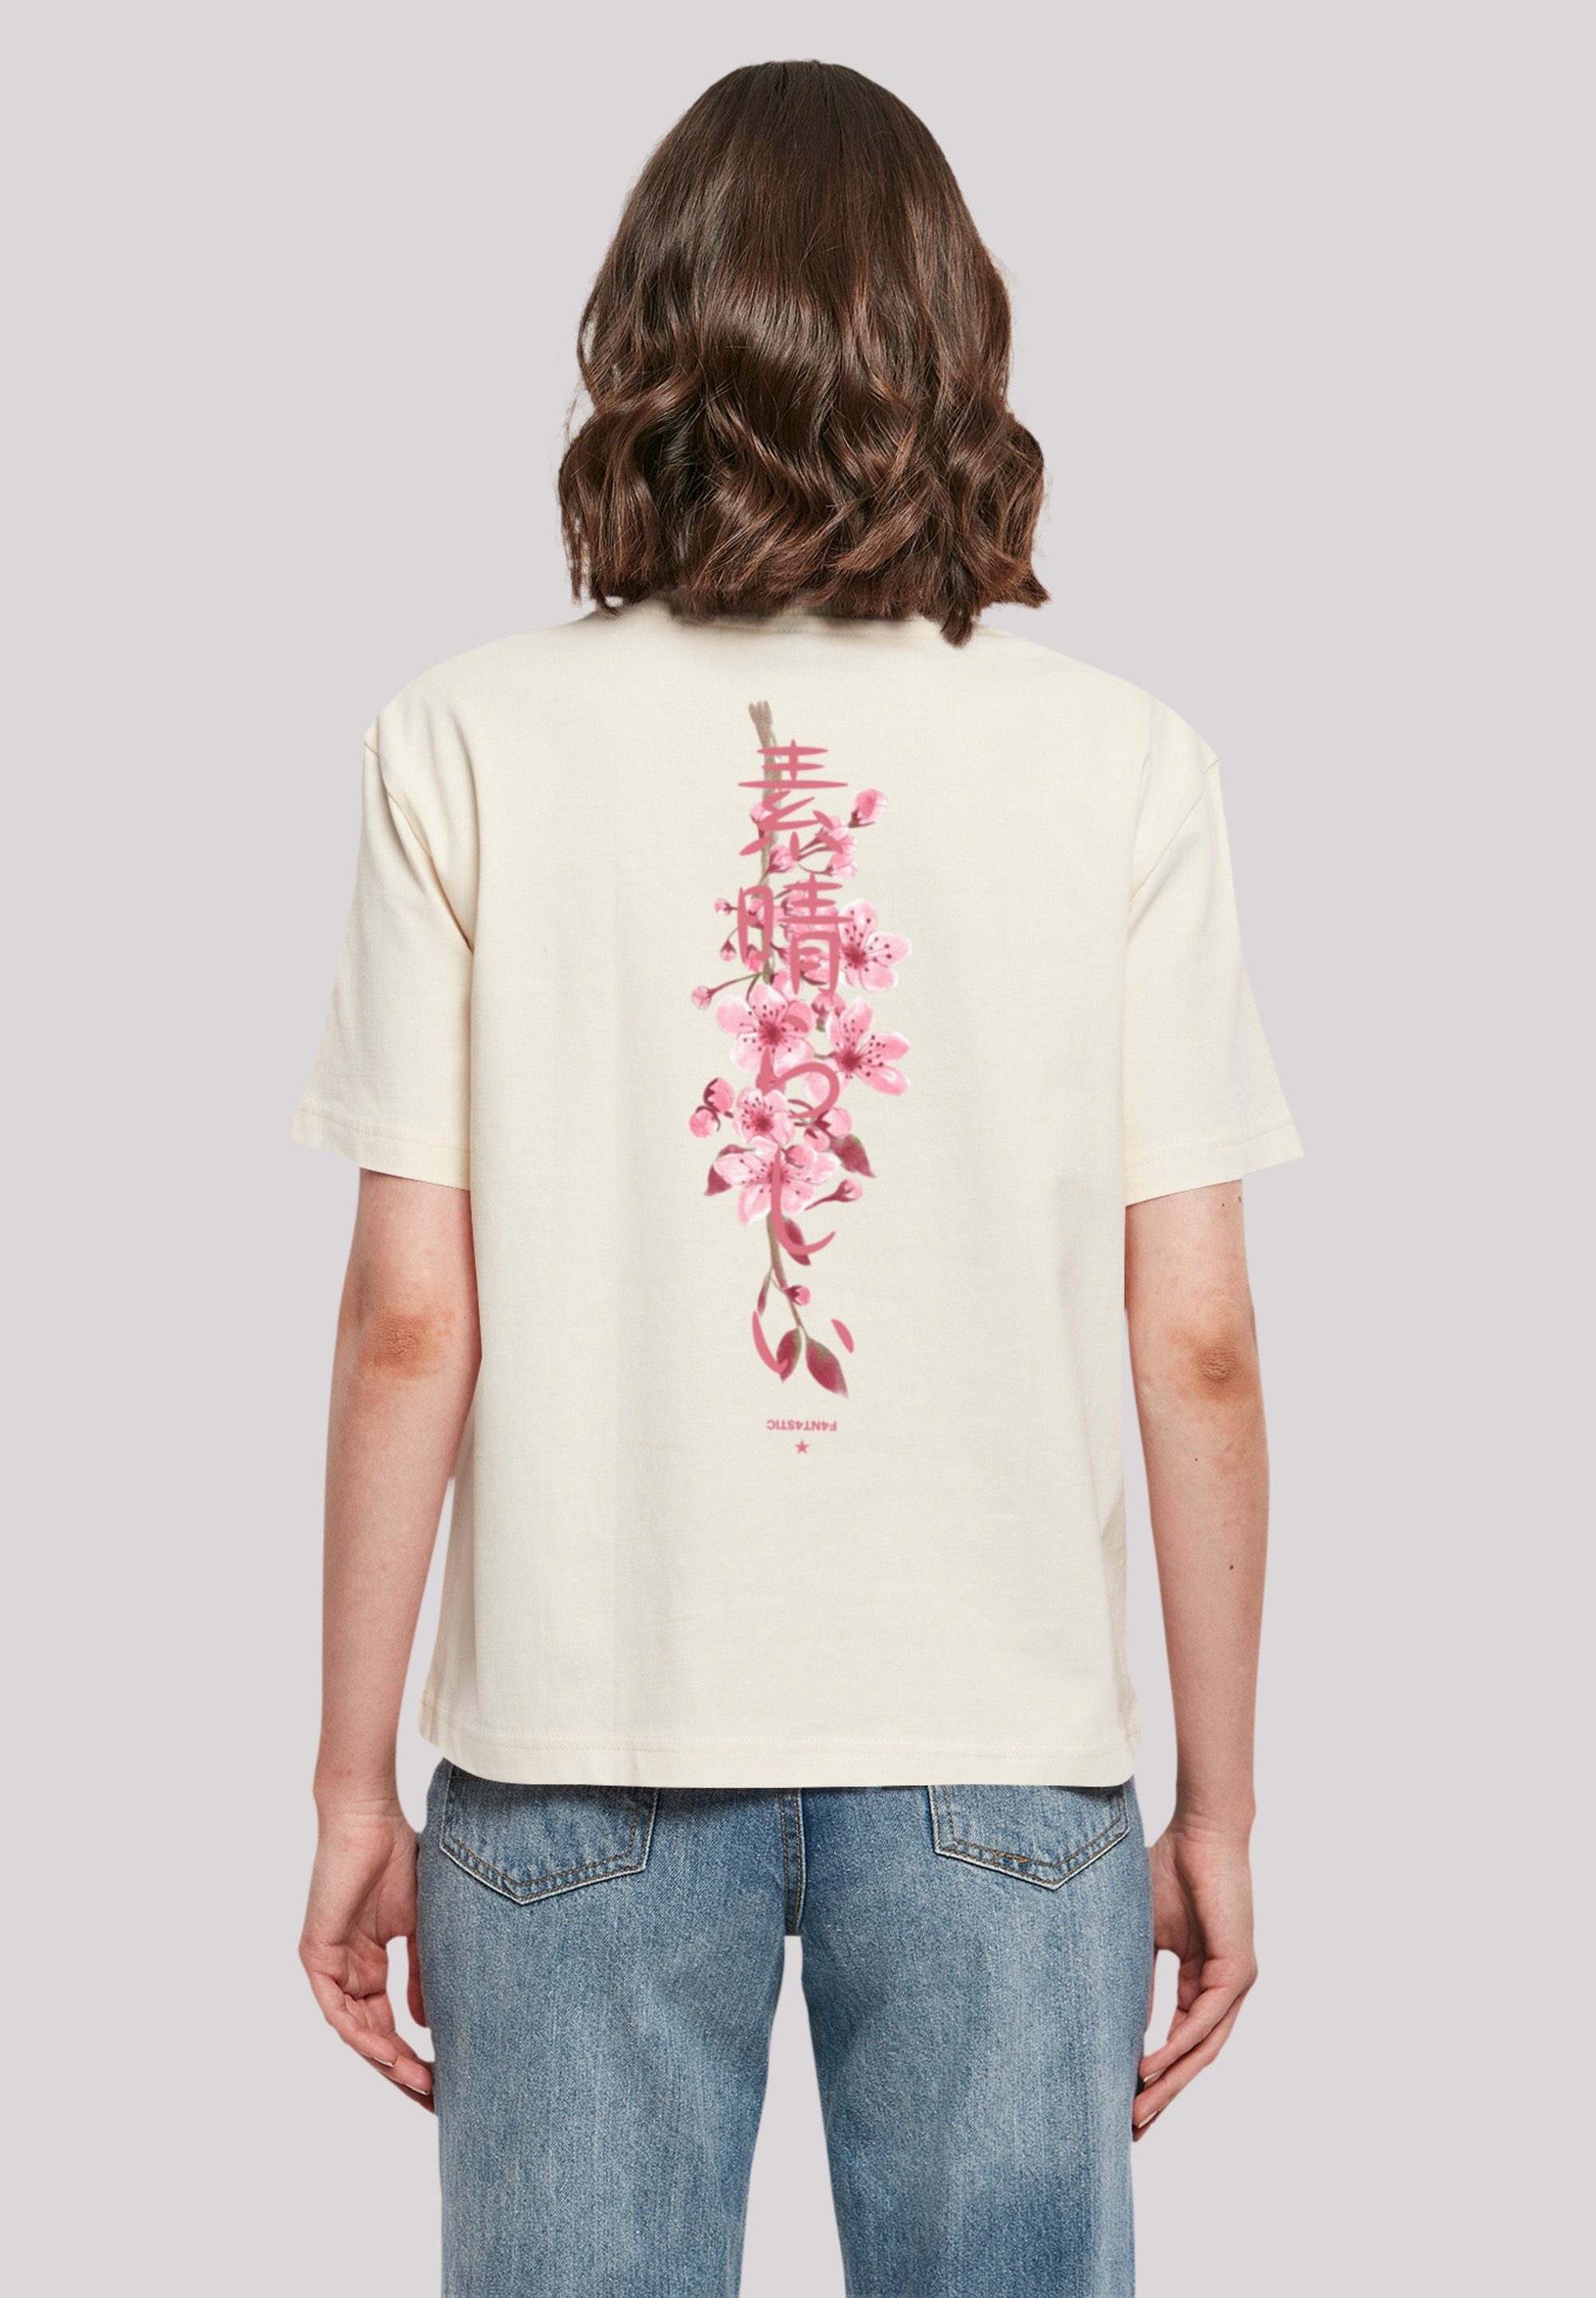 kleiner Print, T-Shirt bitte bestellen weit eine Fällt Blossom Cherry Größe aus, F4NT4STIC